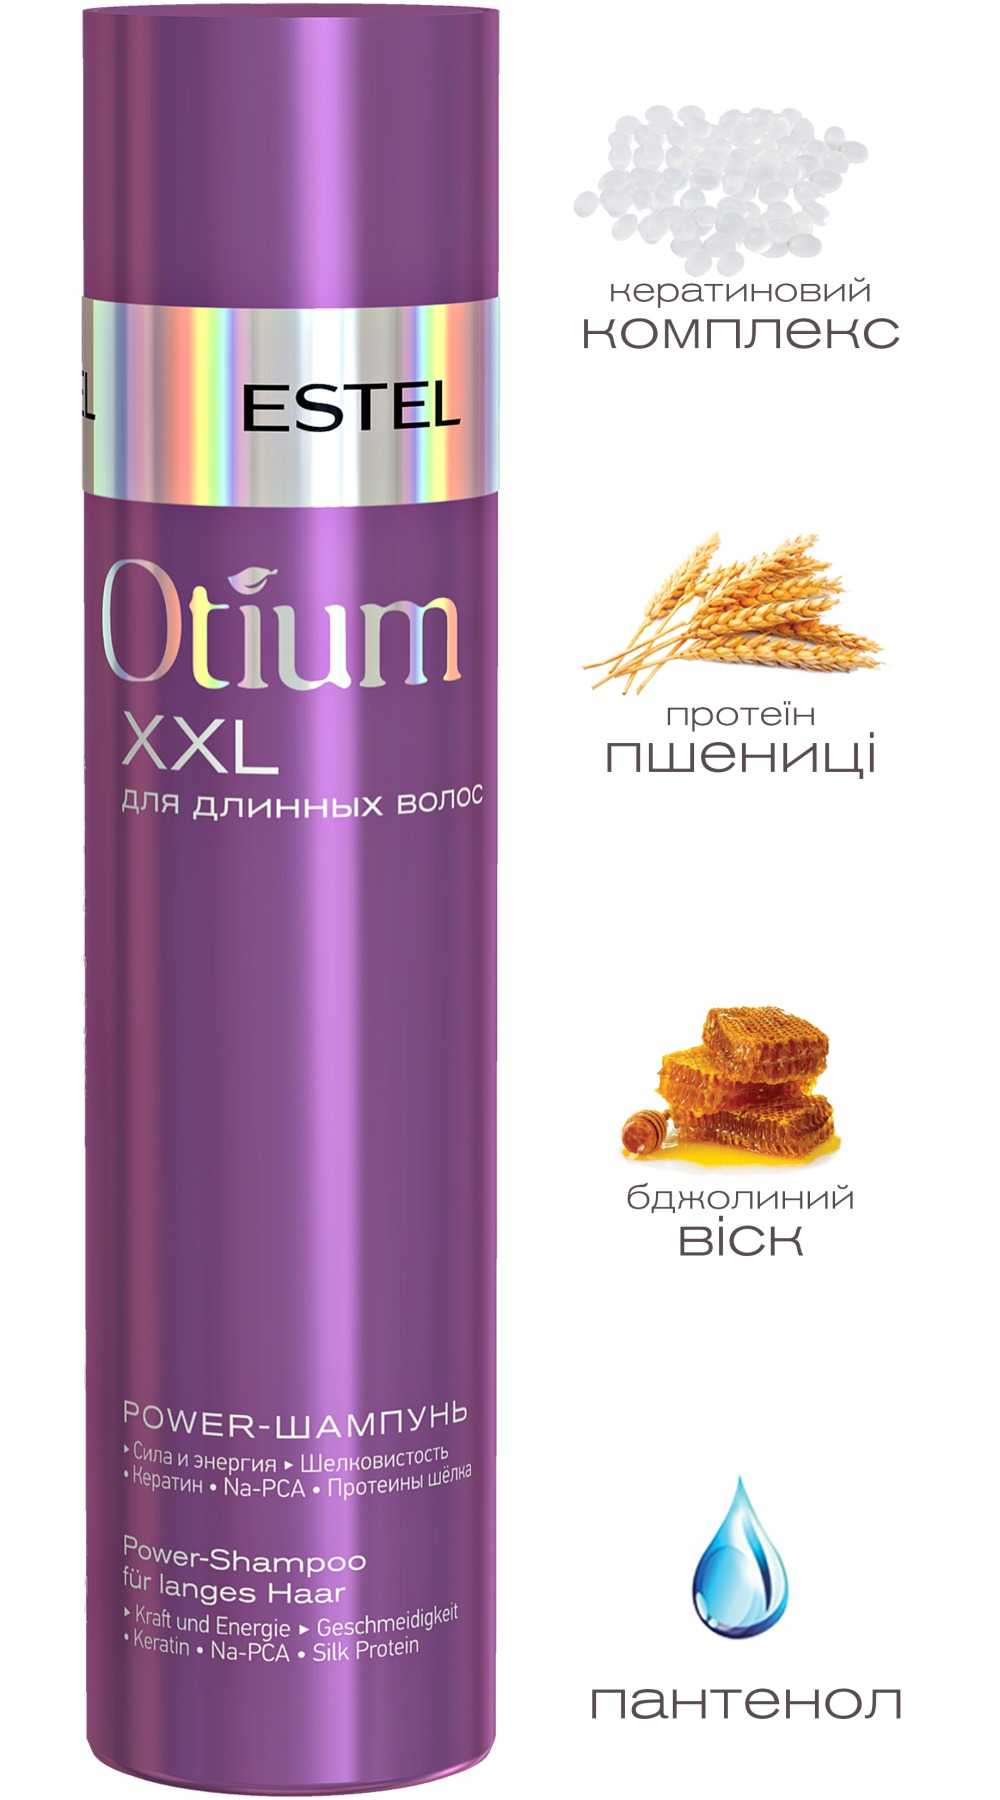 Шампунь Эстель (Estel otium unique) активатор для роста волос: какие проблемы способен устранить, правила применения и эффект от использования